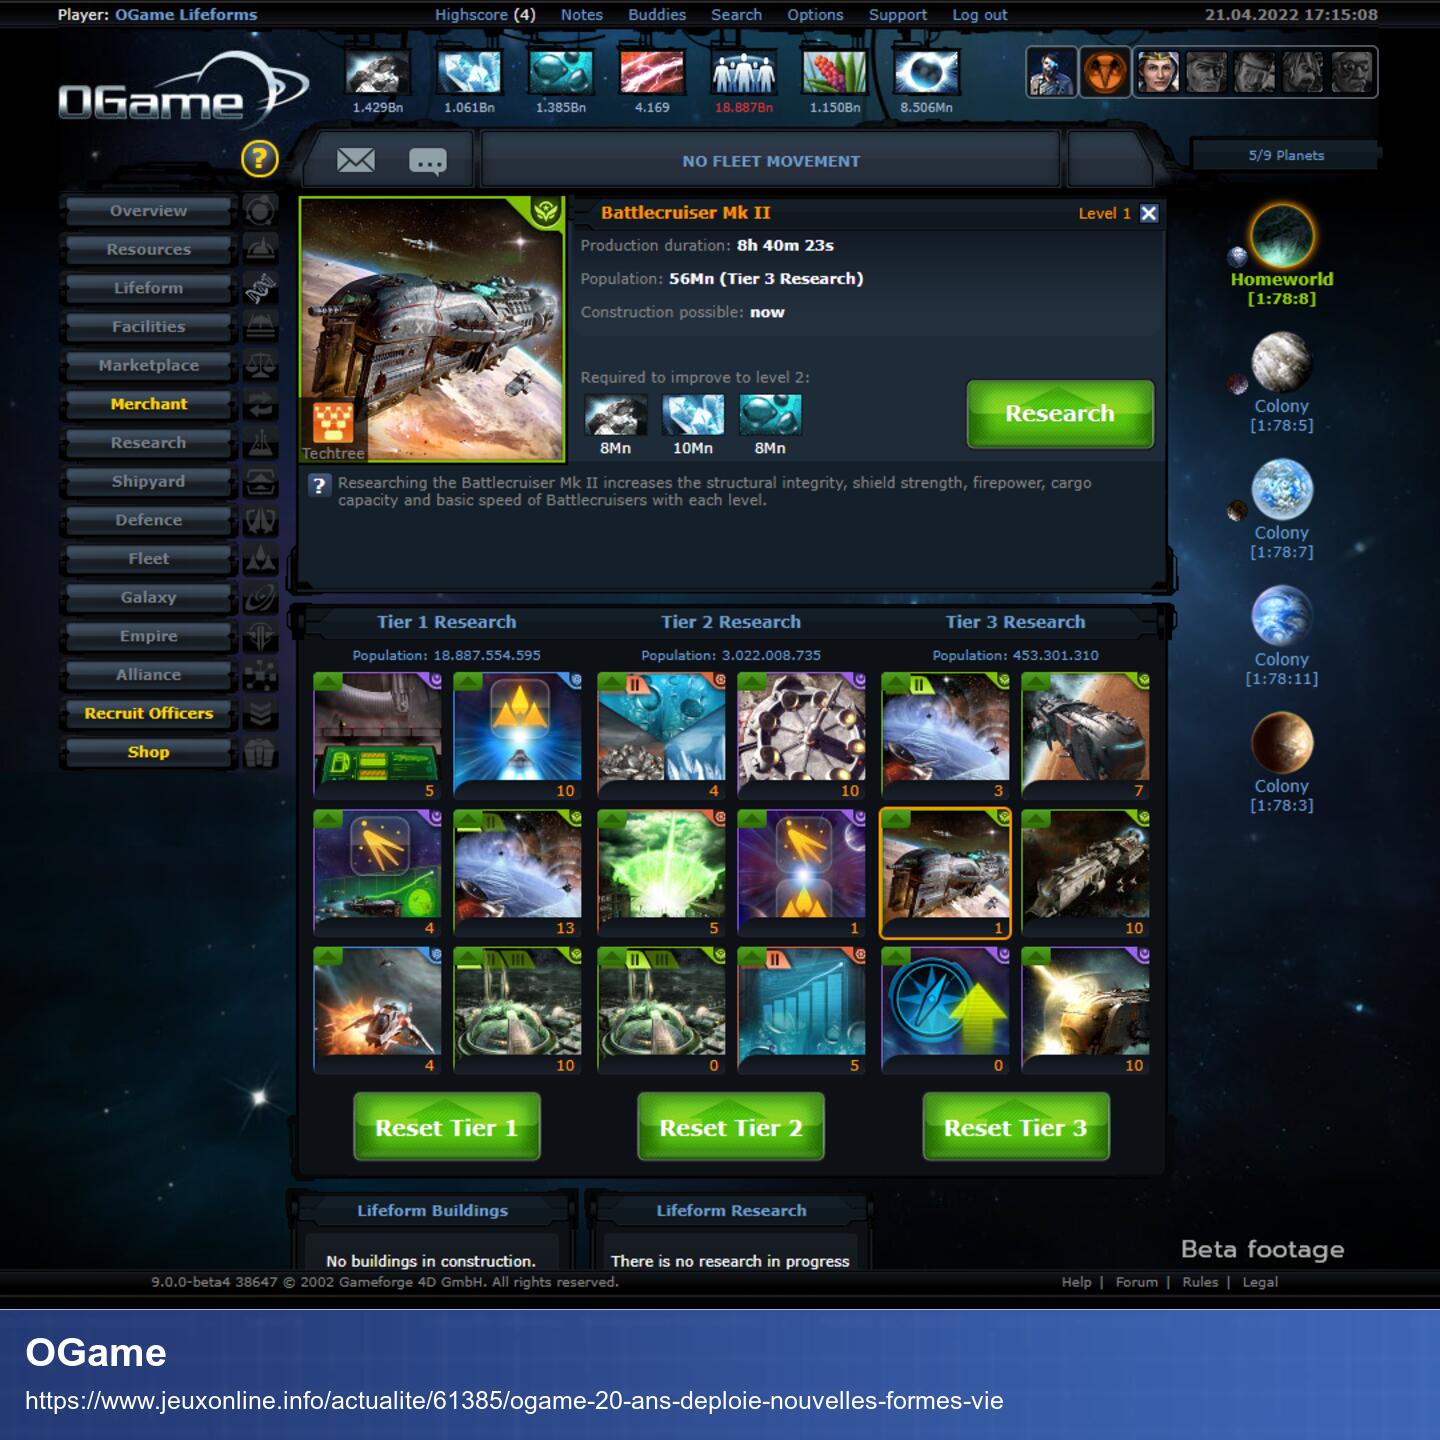 Screenshot des Spiels. Es sieht aus wie eine Website mit vielen Buttons, Text und Thumbnails.